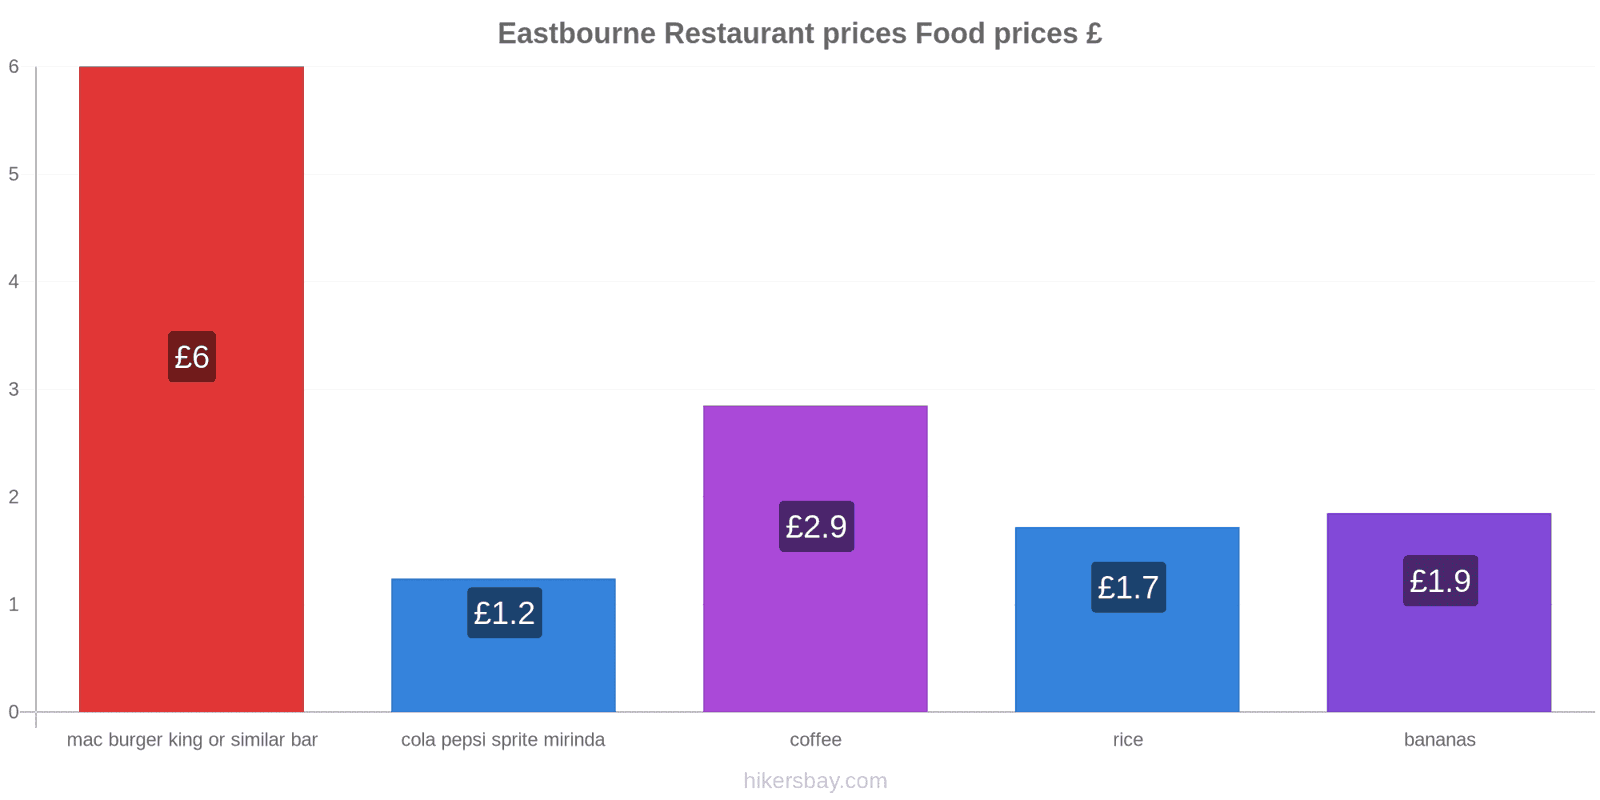 Eastbourne price changes hikersbay.com